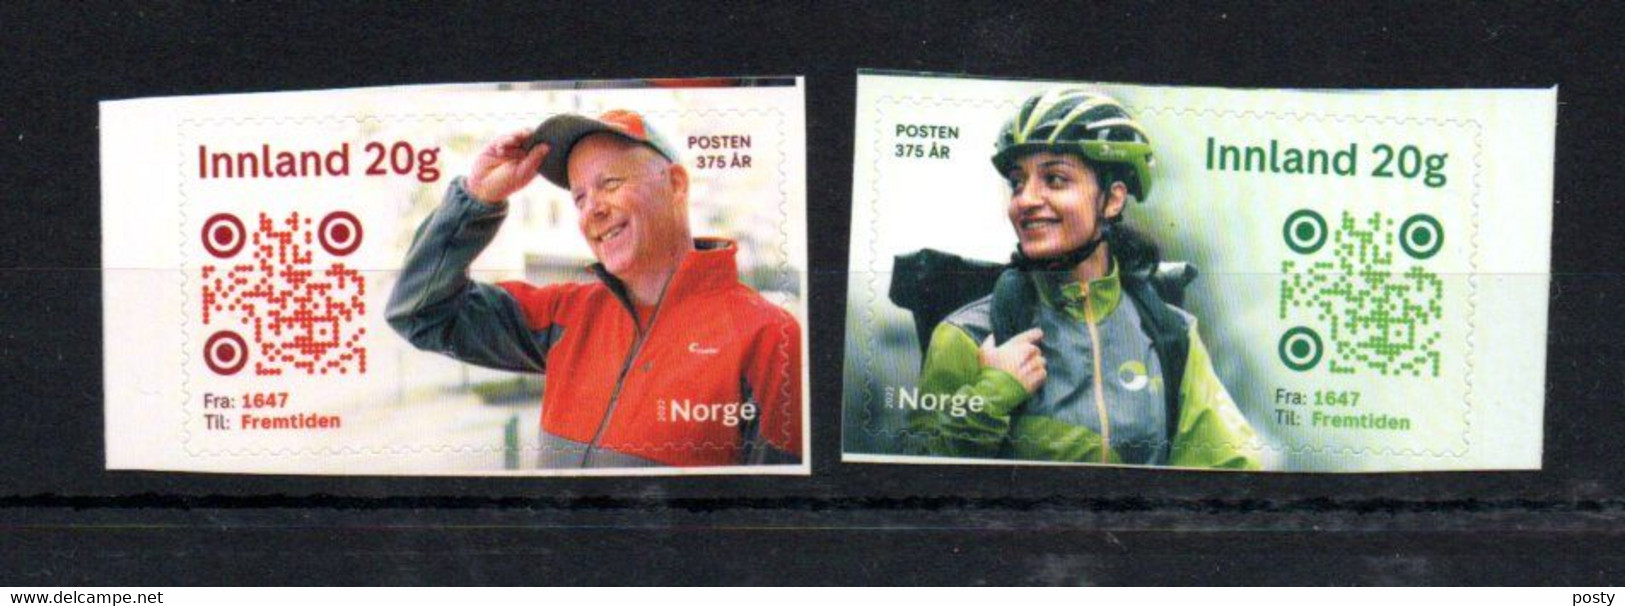 NORVEGE - NORWAY - 2022 - FACTEUR - MAILMAN - 375éme ANNIVERSAIRE - 375th ANNIVERSARY - - Ongebruikt